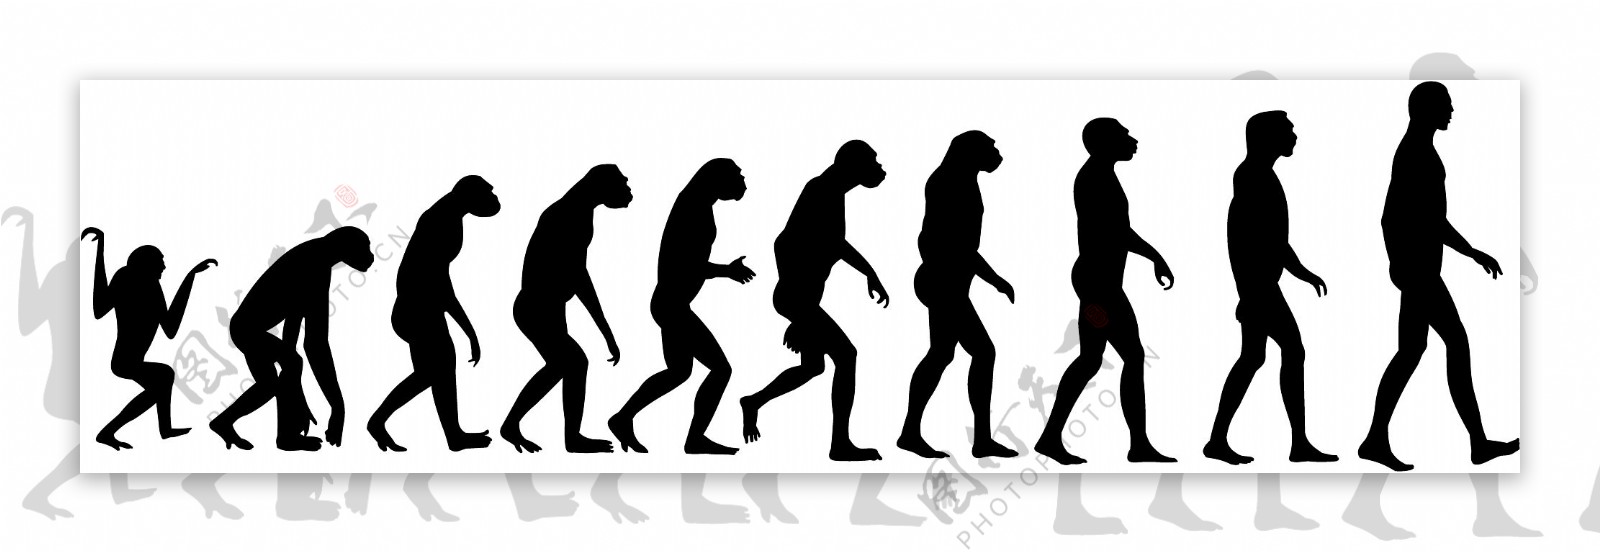 进化过程